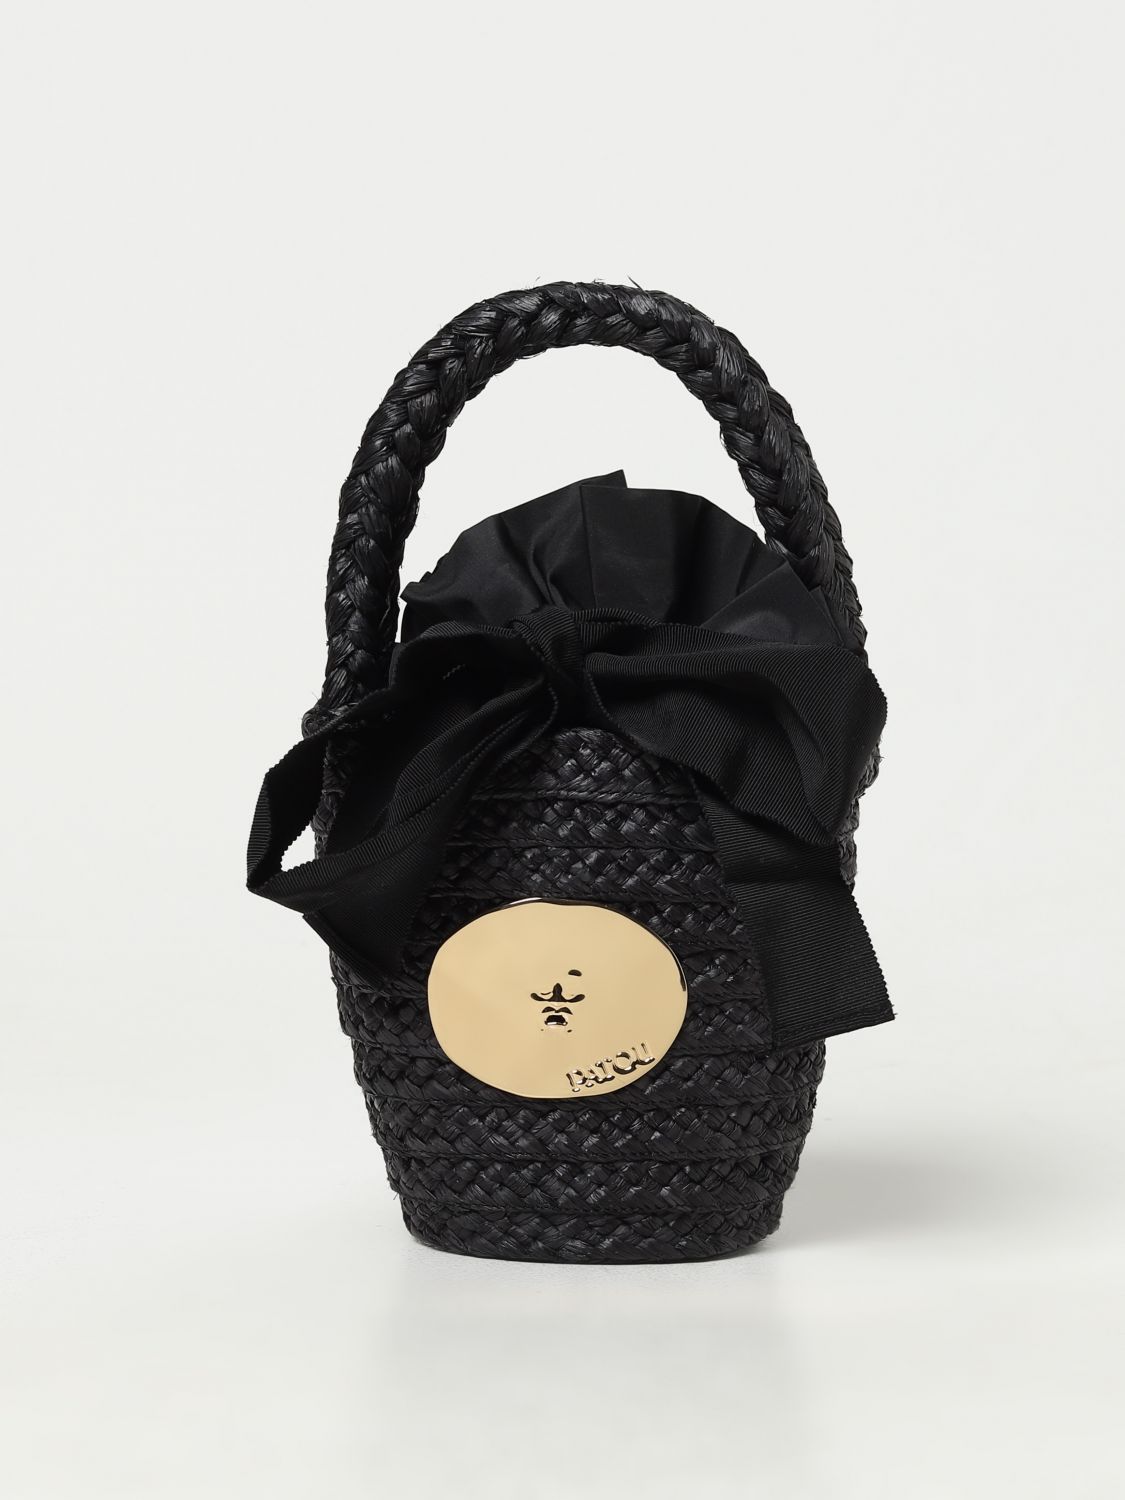 Shop Patou Mini Bag  Woman Color Black